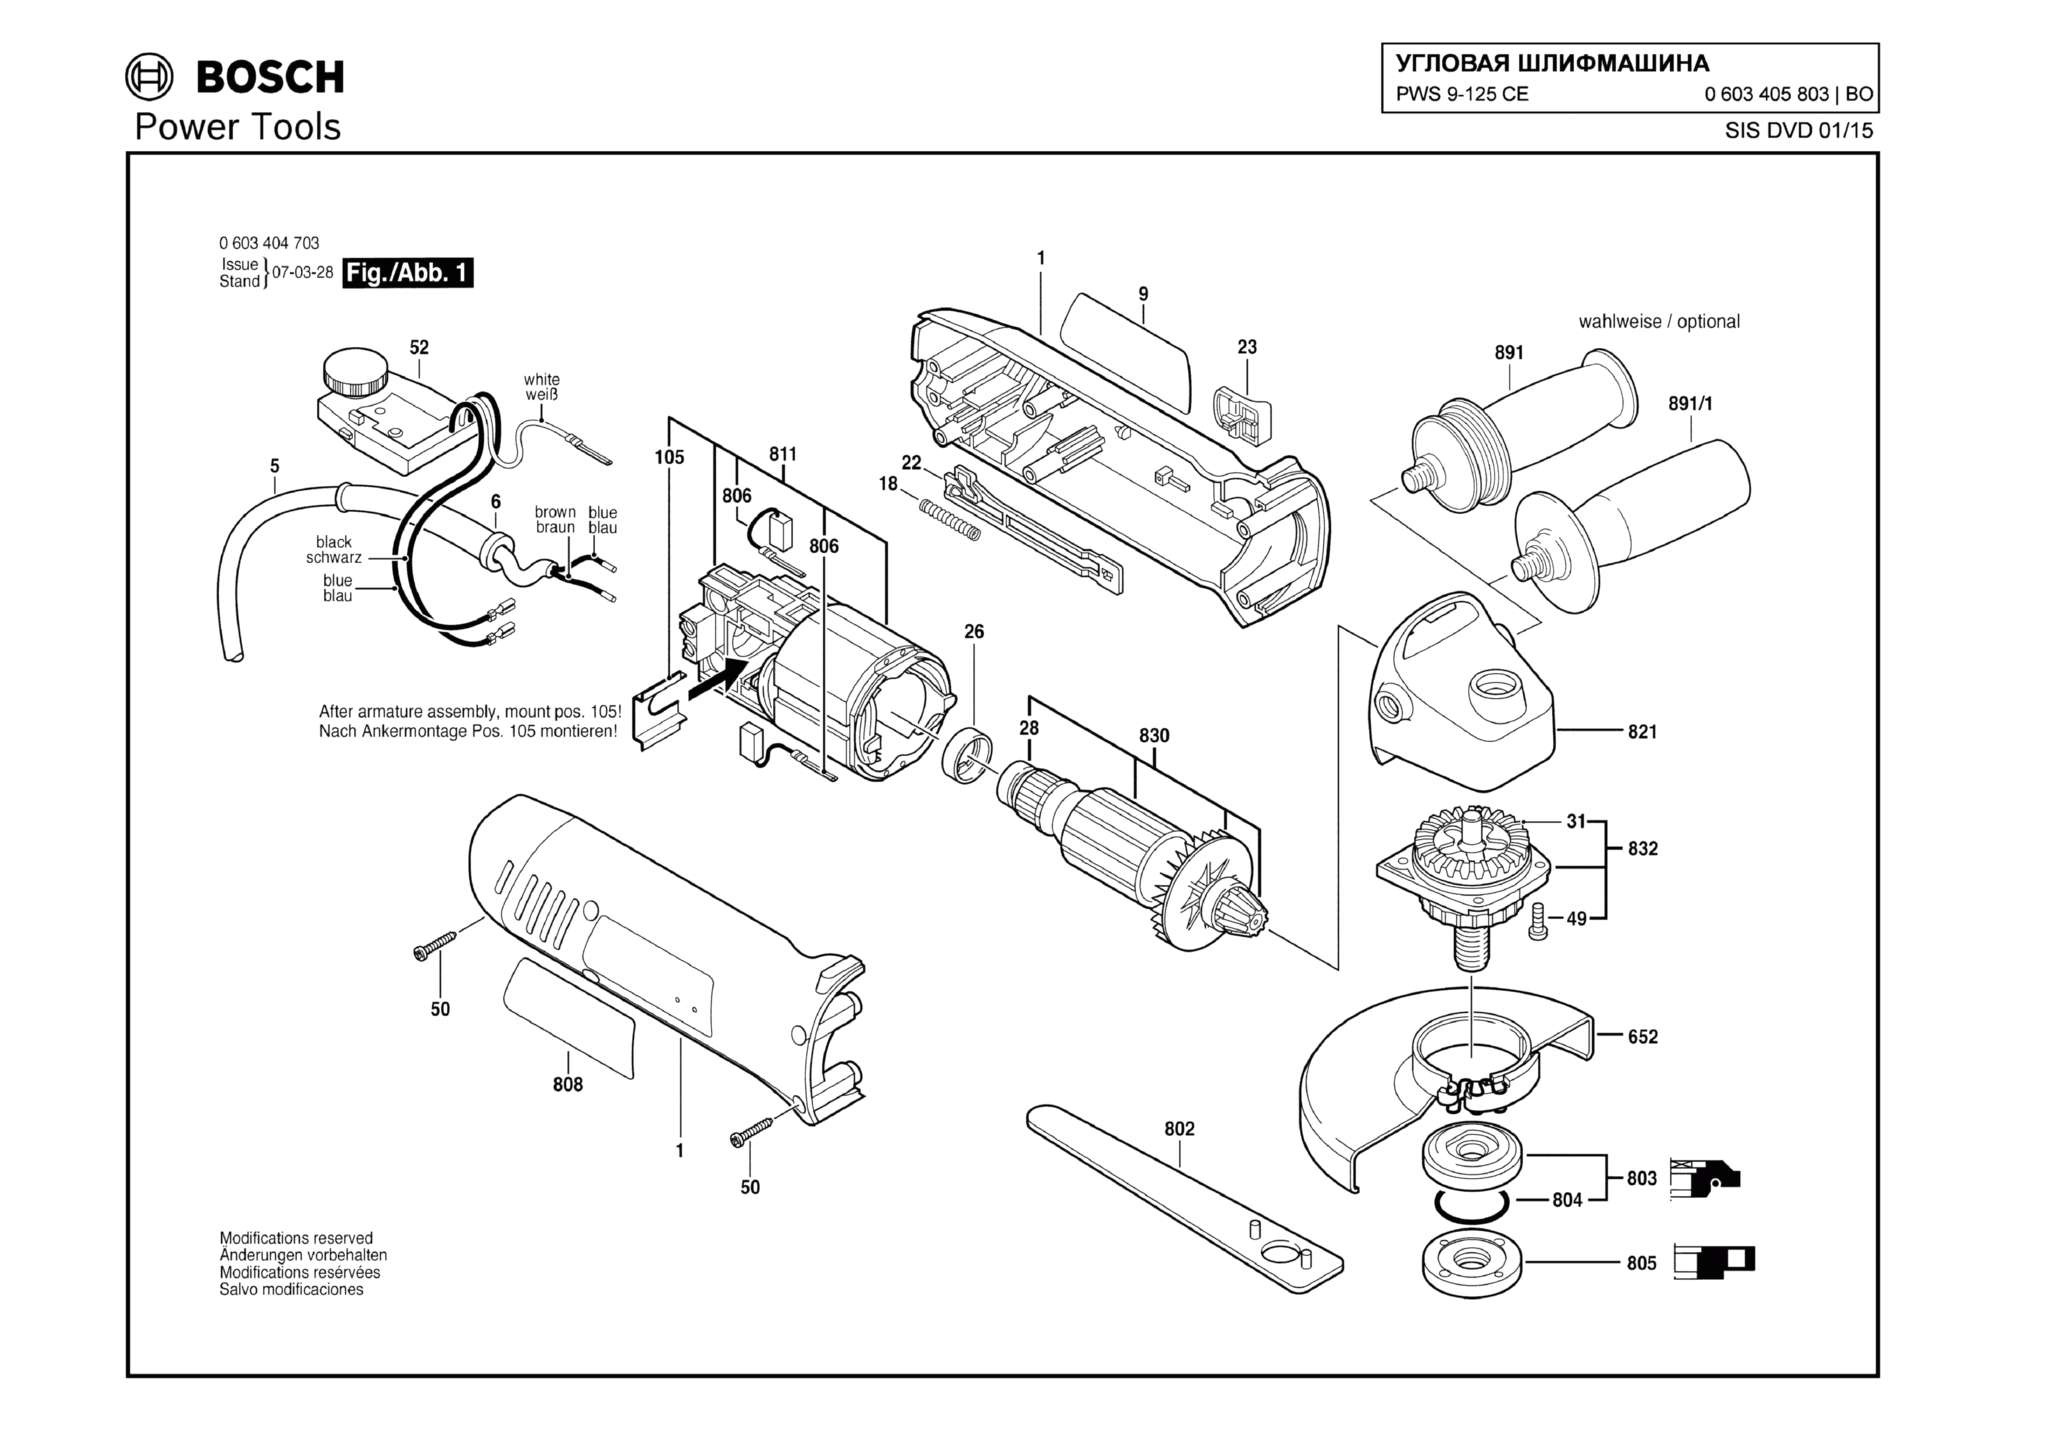 Запчасти, схема и деталировка Bosch PWS 9-125 CE (ТИП 0603405803)